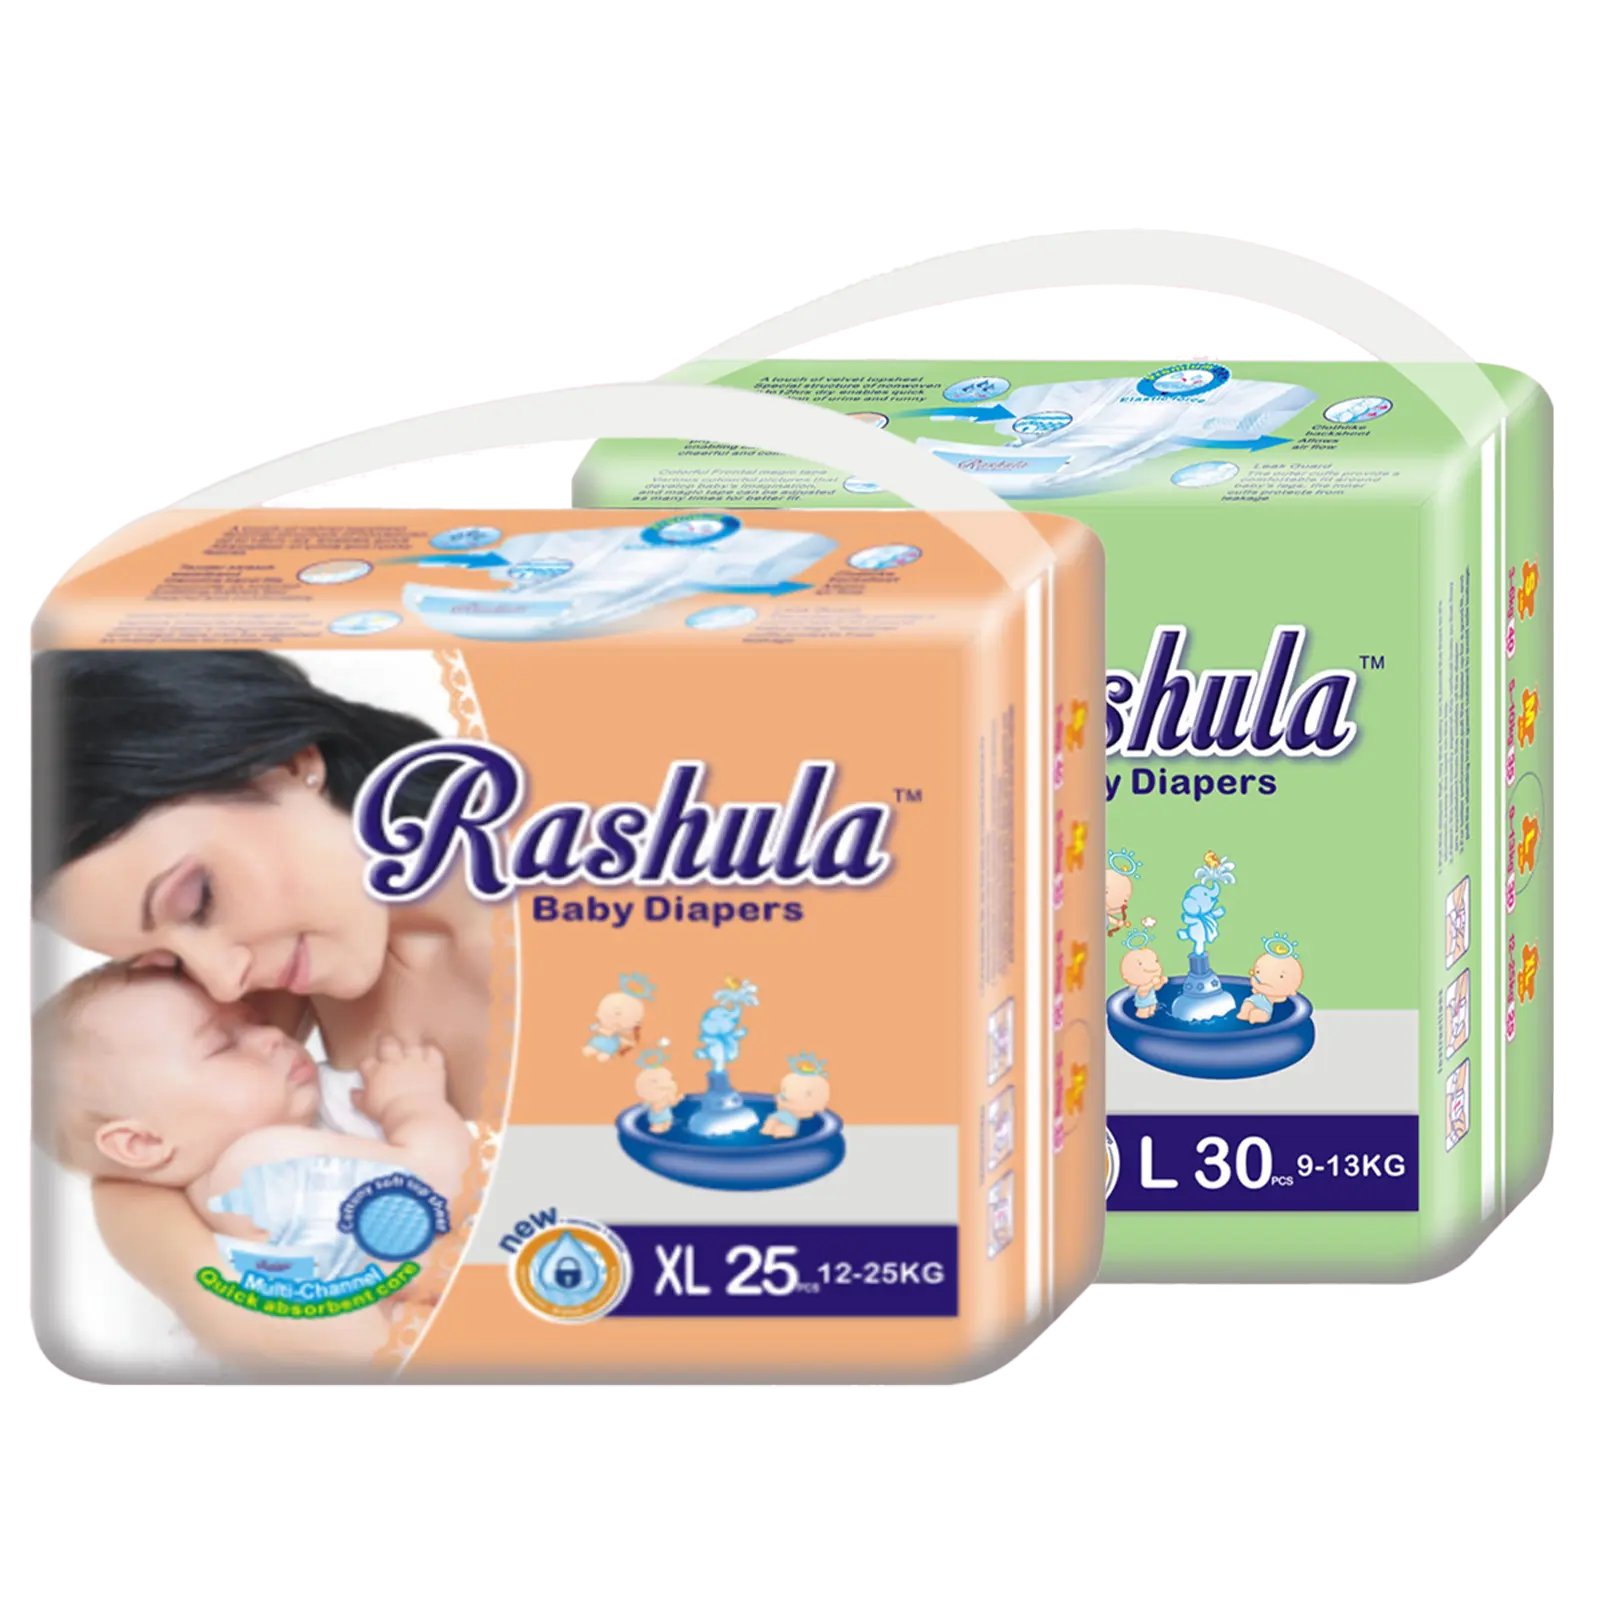 Tek kullanımlık bebek bezi özel etiket marka hızlı emici çocuk bezi toptan bebek bezi